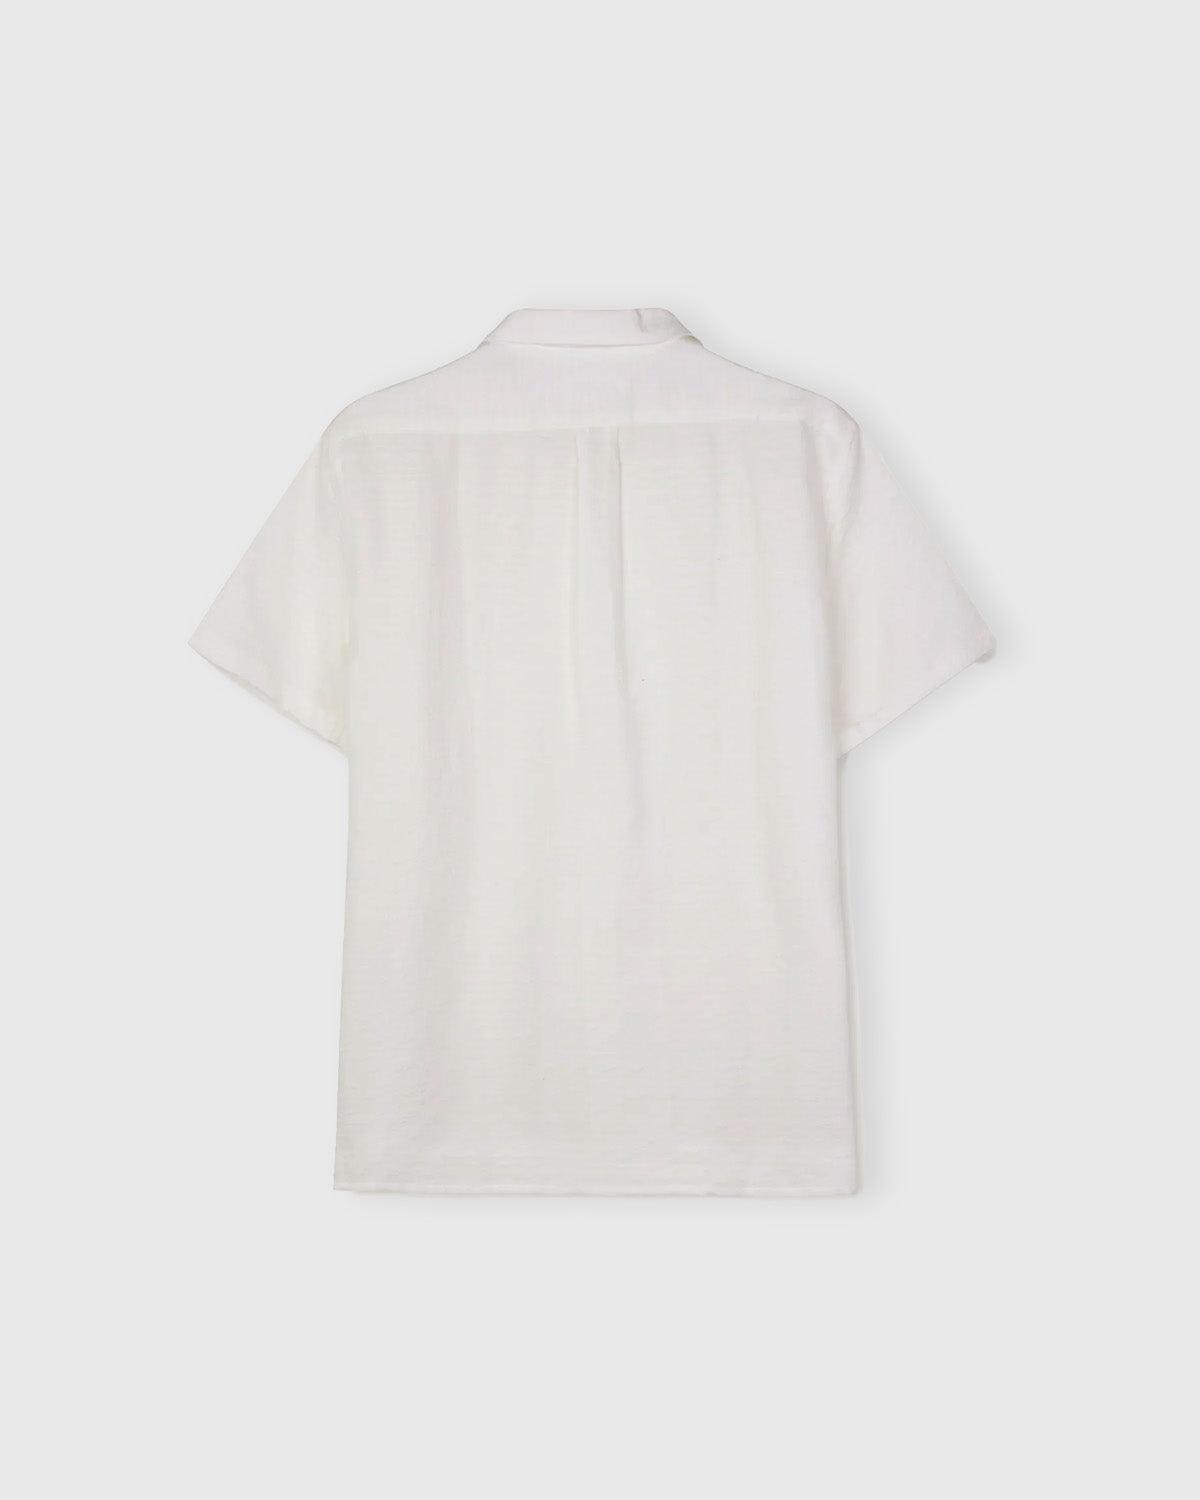 Cave 3428 Shirt - Off White - Libertine-Libertine - Kul og Koks